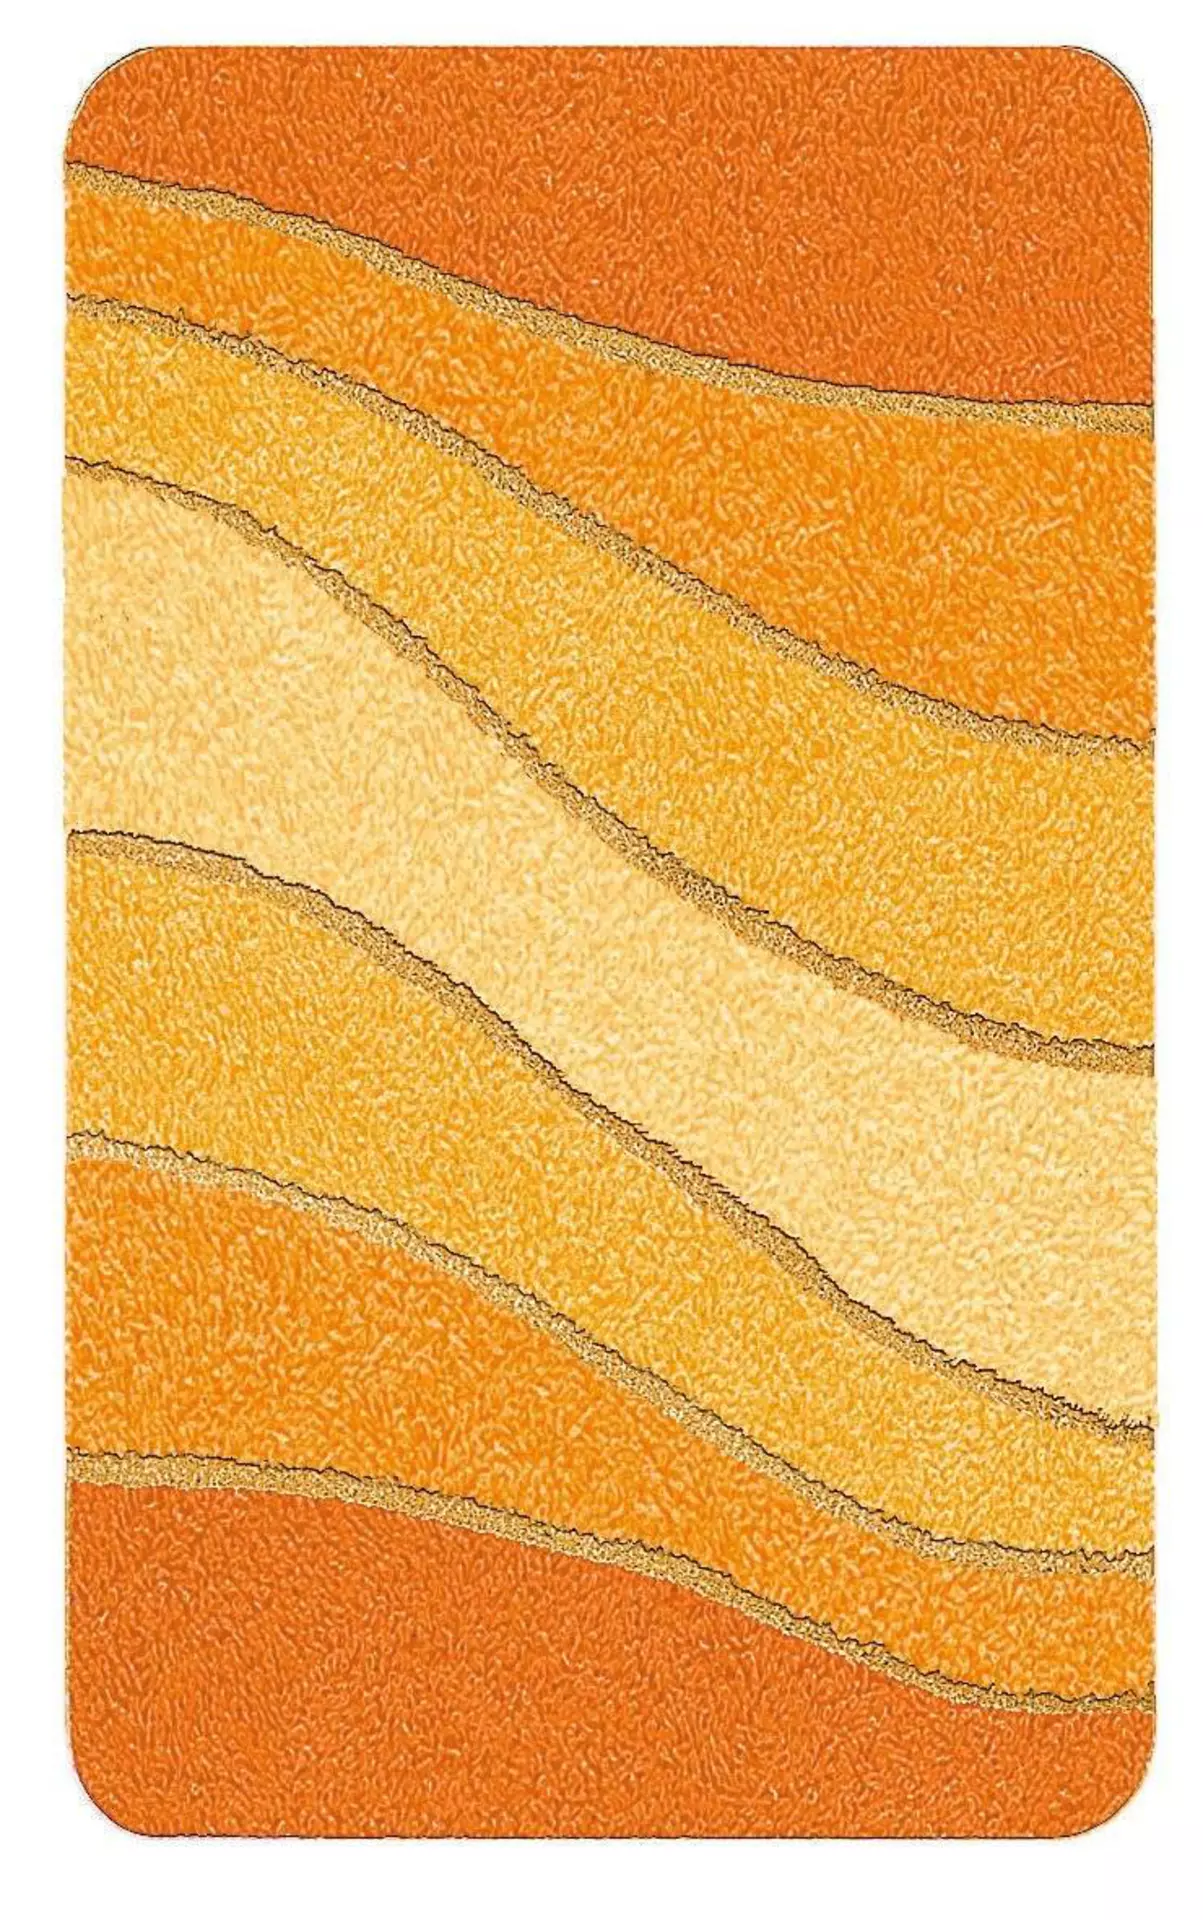 Badteppich Ocean Meusch Textil 65 x 2 x 55 cm